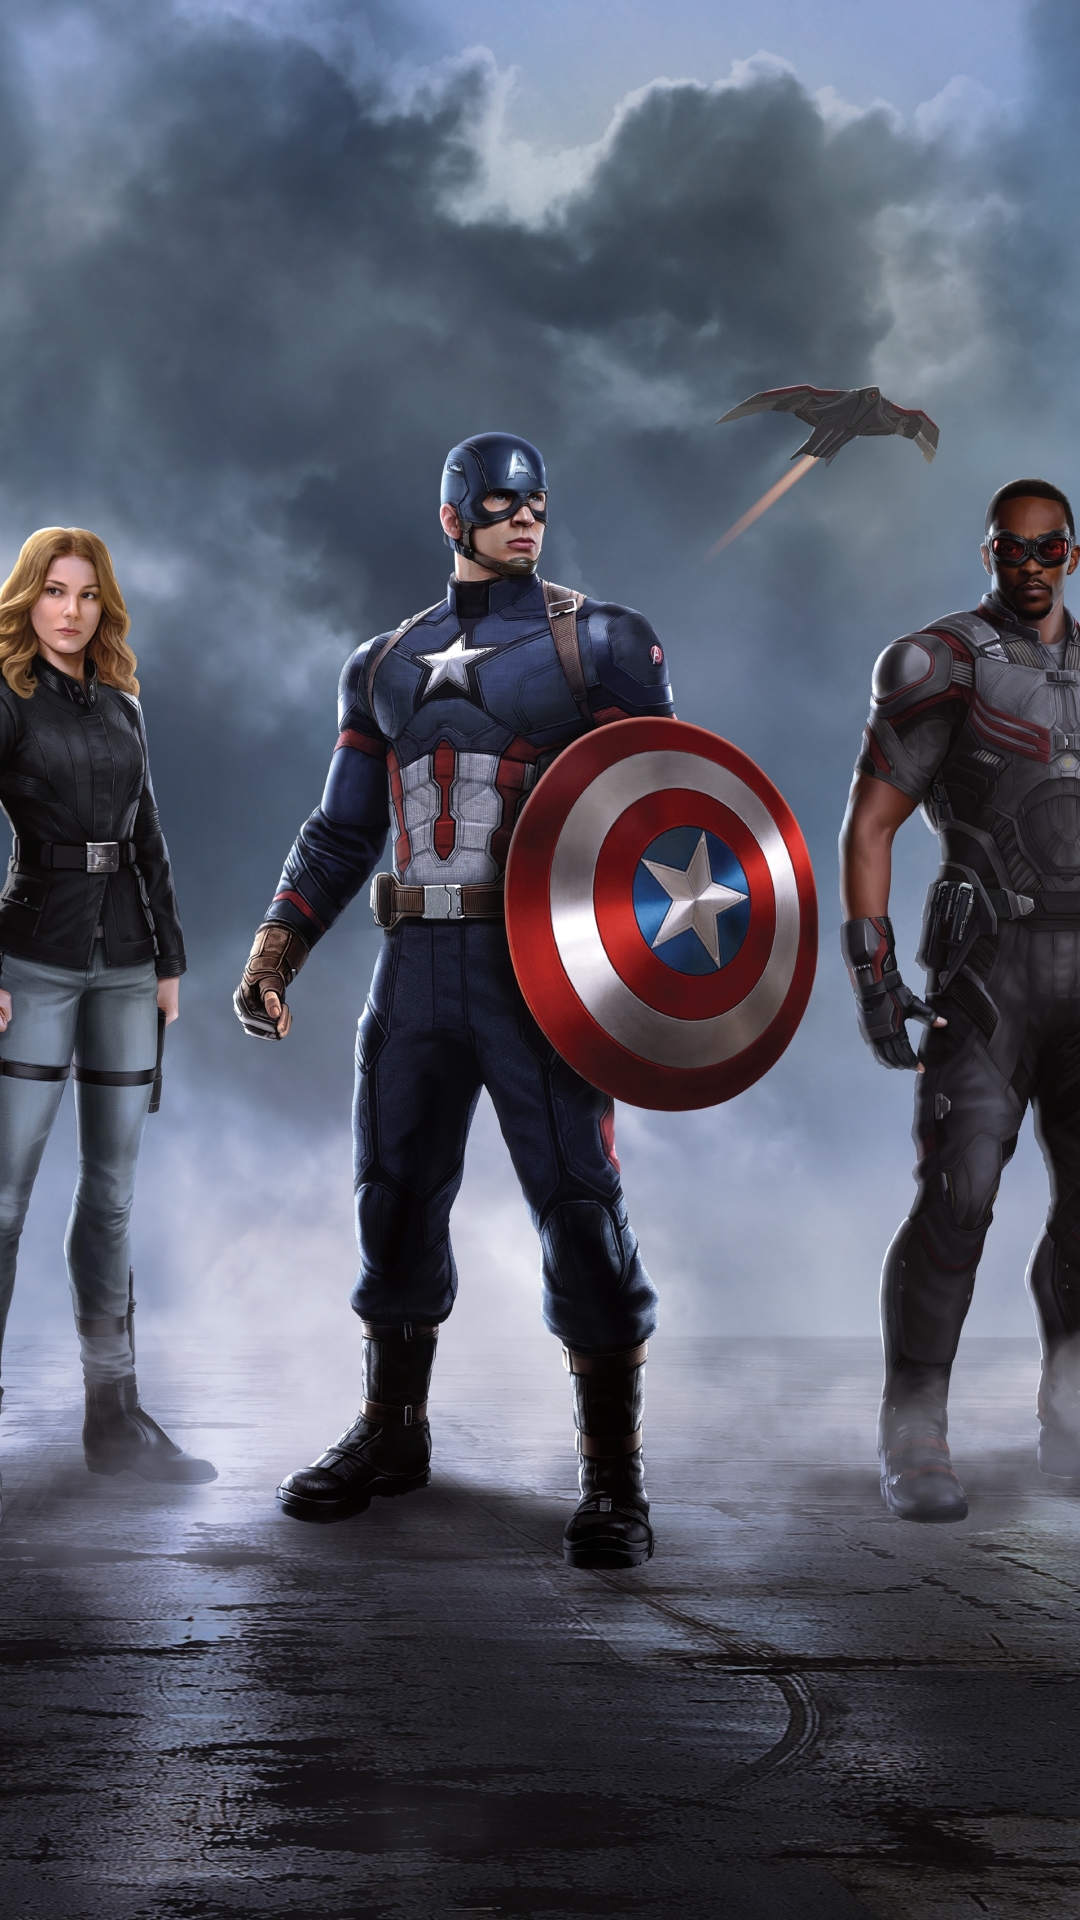 キャプテンアメリカ壁紙,キャプテン・アメリカ,スーパーヒーロー,架空の人物,映画,アクションフィギュア